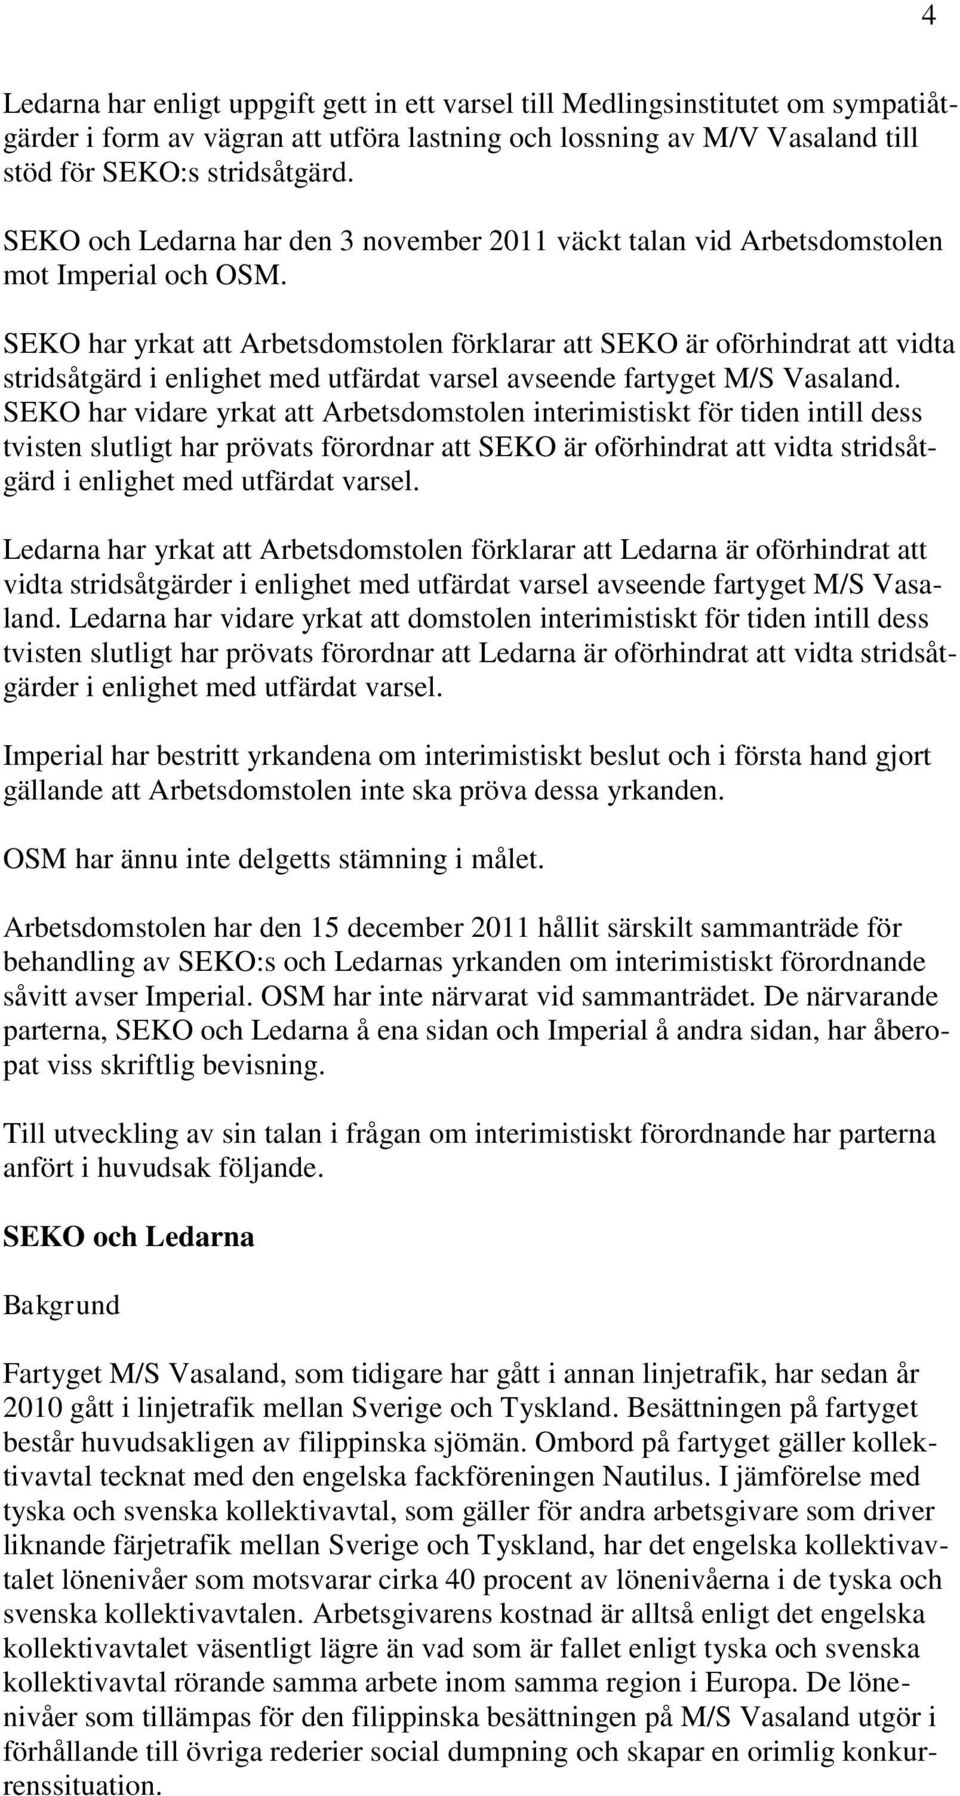 SEKO har yrkat att Arbetsdomstolen förklarar att SEKO är oförhindrat att vidta stridsåtgärd i enlighet med utfärdat varsel avseende fartyget M/S Vasaland.